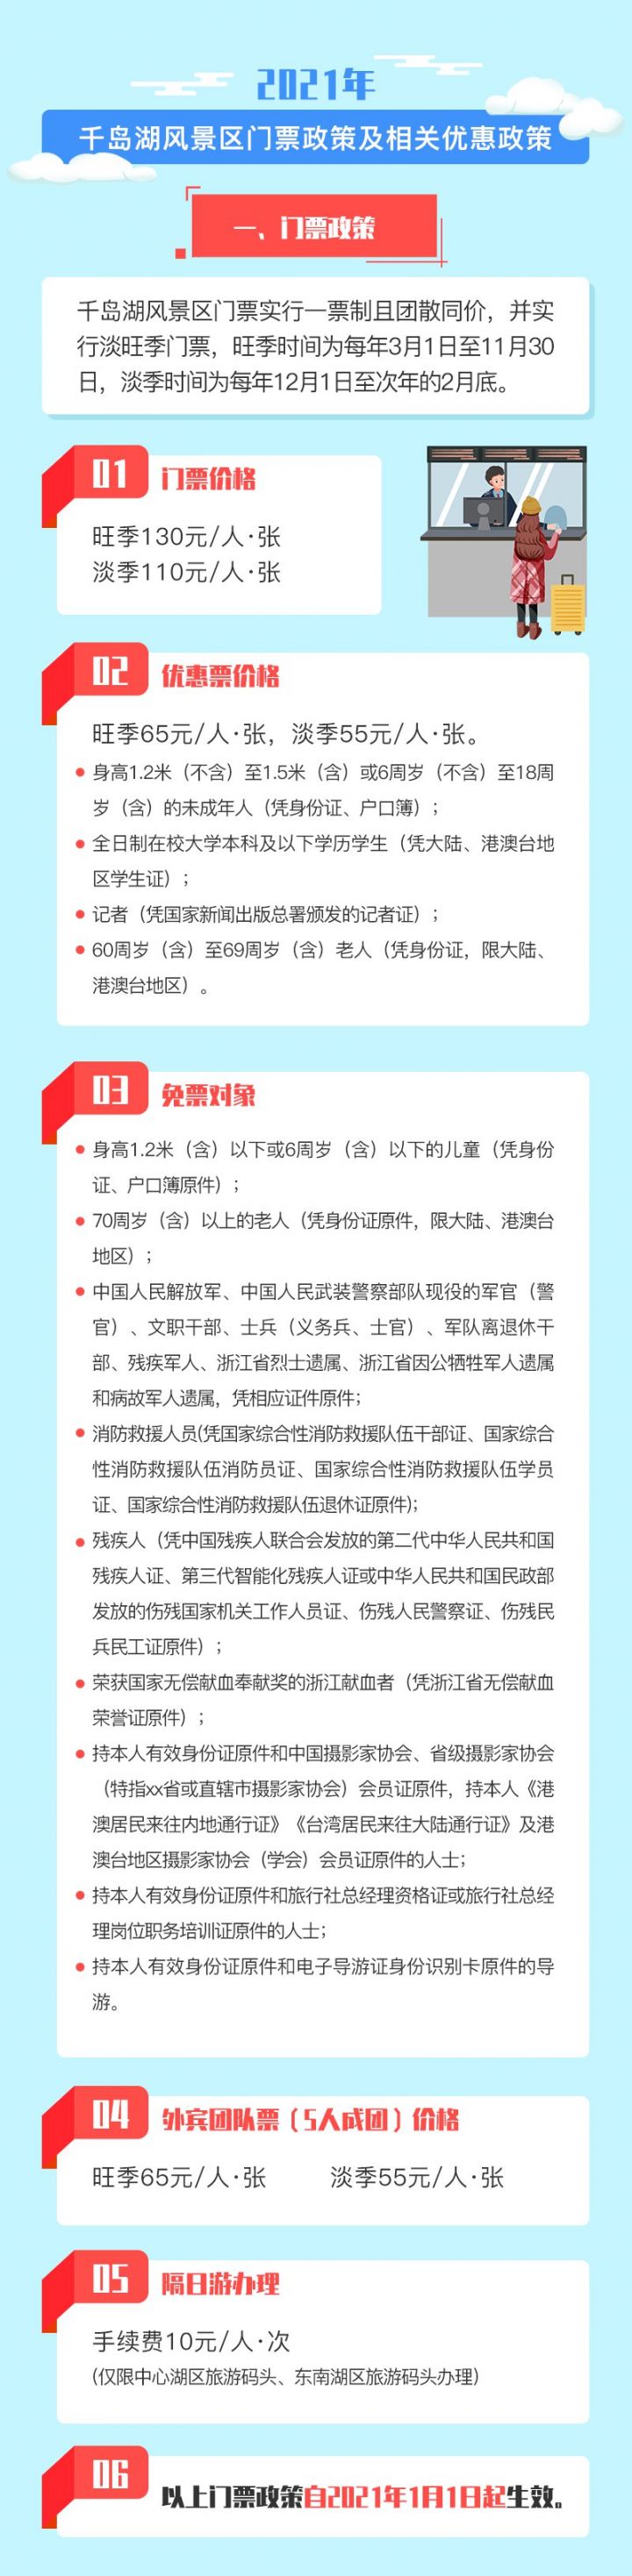 2021杭州千岛湖门票及相关优惠政策